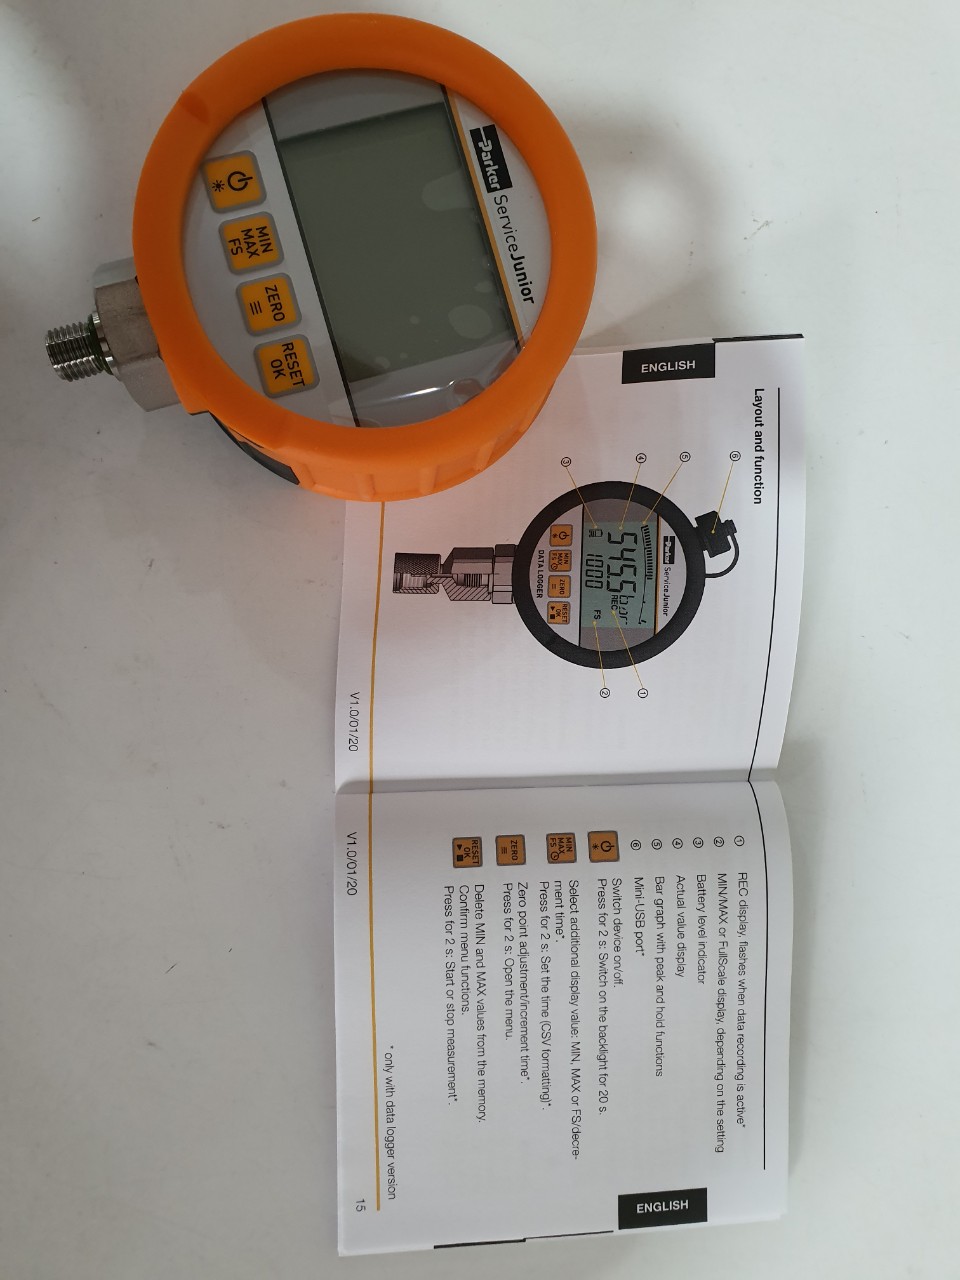 SCJR-5800-02 sensor gauge